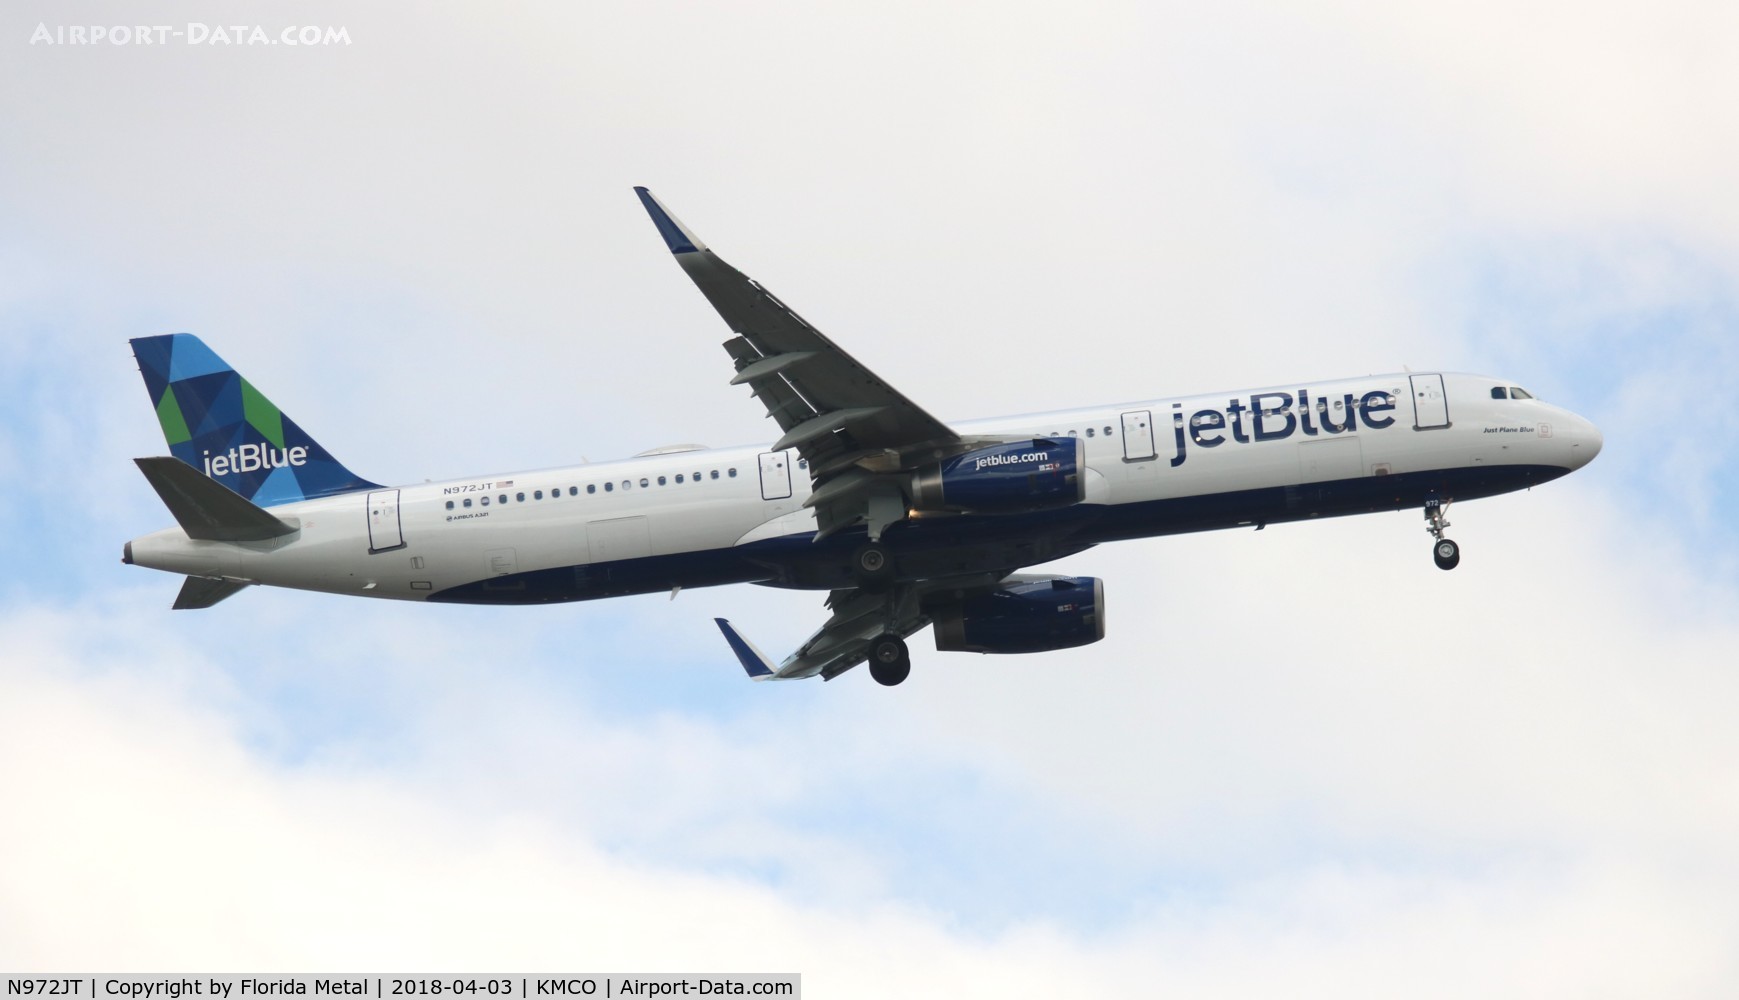 N972JT, 2016 Airbus A321-231 C/N 7455, JetBlue